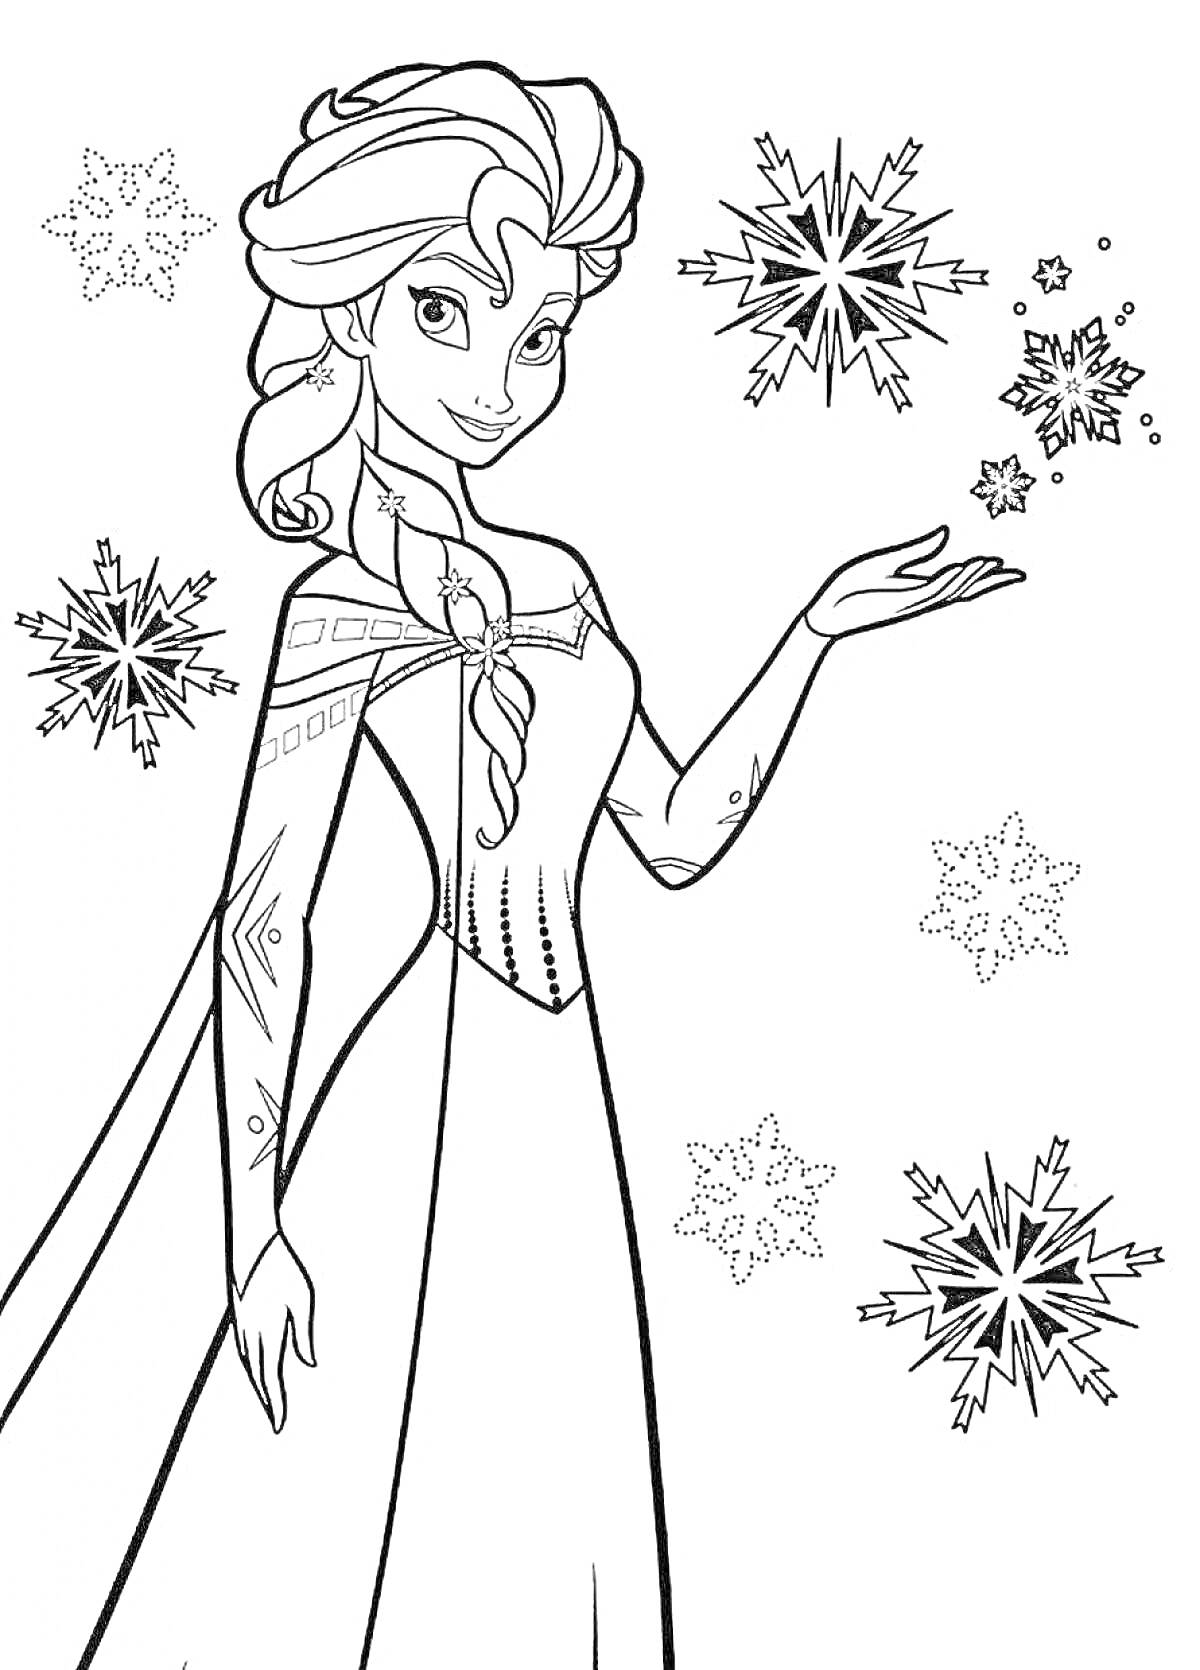 Раскраска Принцесса с косой, платьем и снежинками